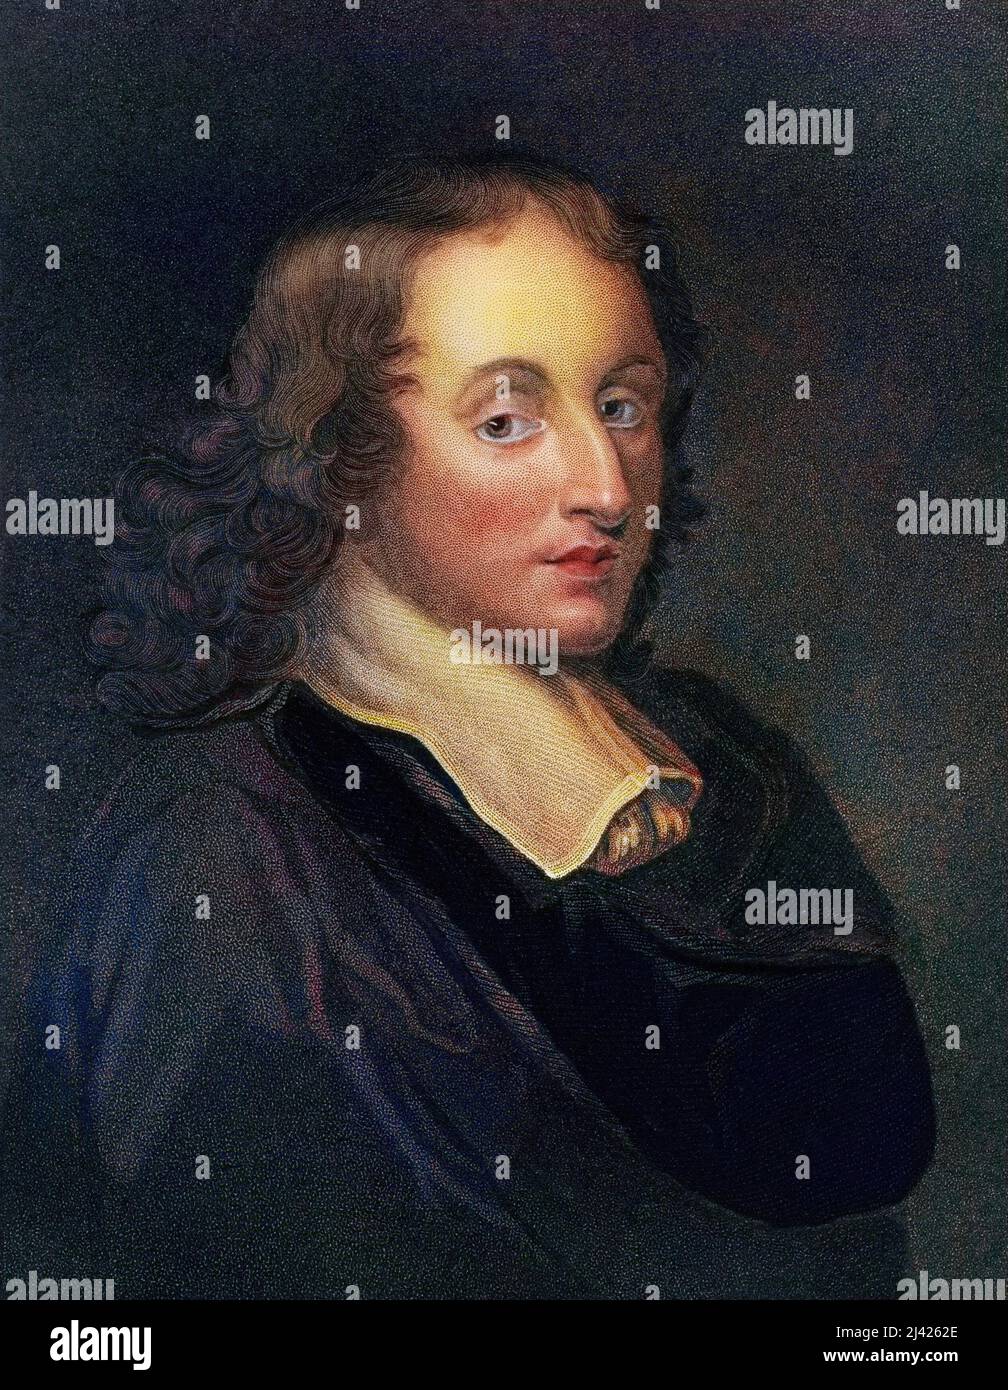 Portrait de Blaise Pascal, mathématicien, physicien et philosophe francais (1623-1662). Stock Photo